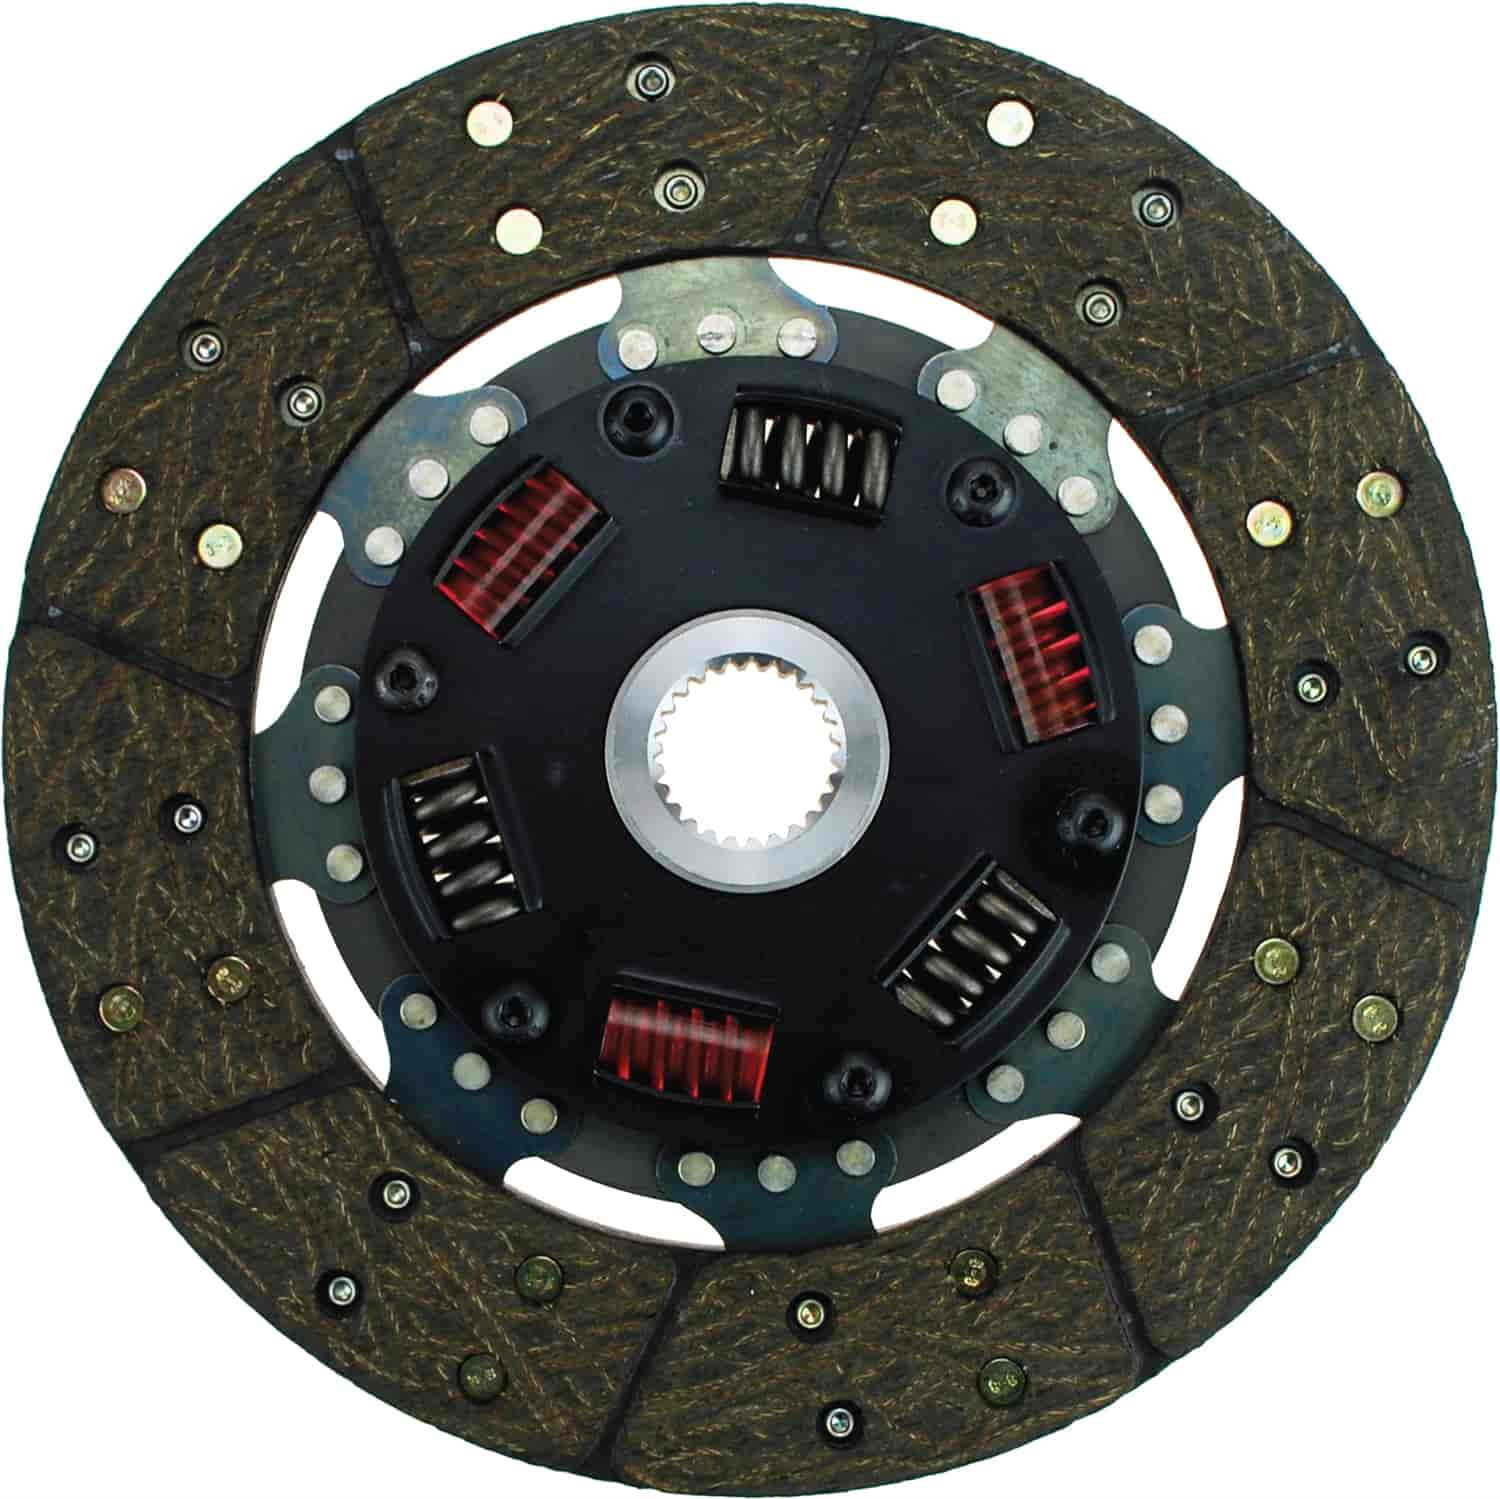 300 Series Sprung Center Clutch Disc 9-1/2" Diameter